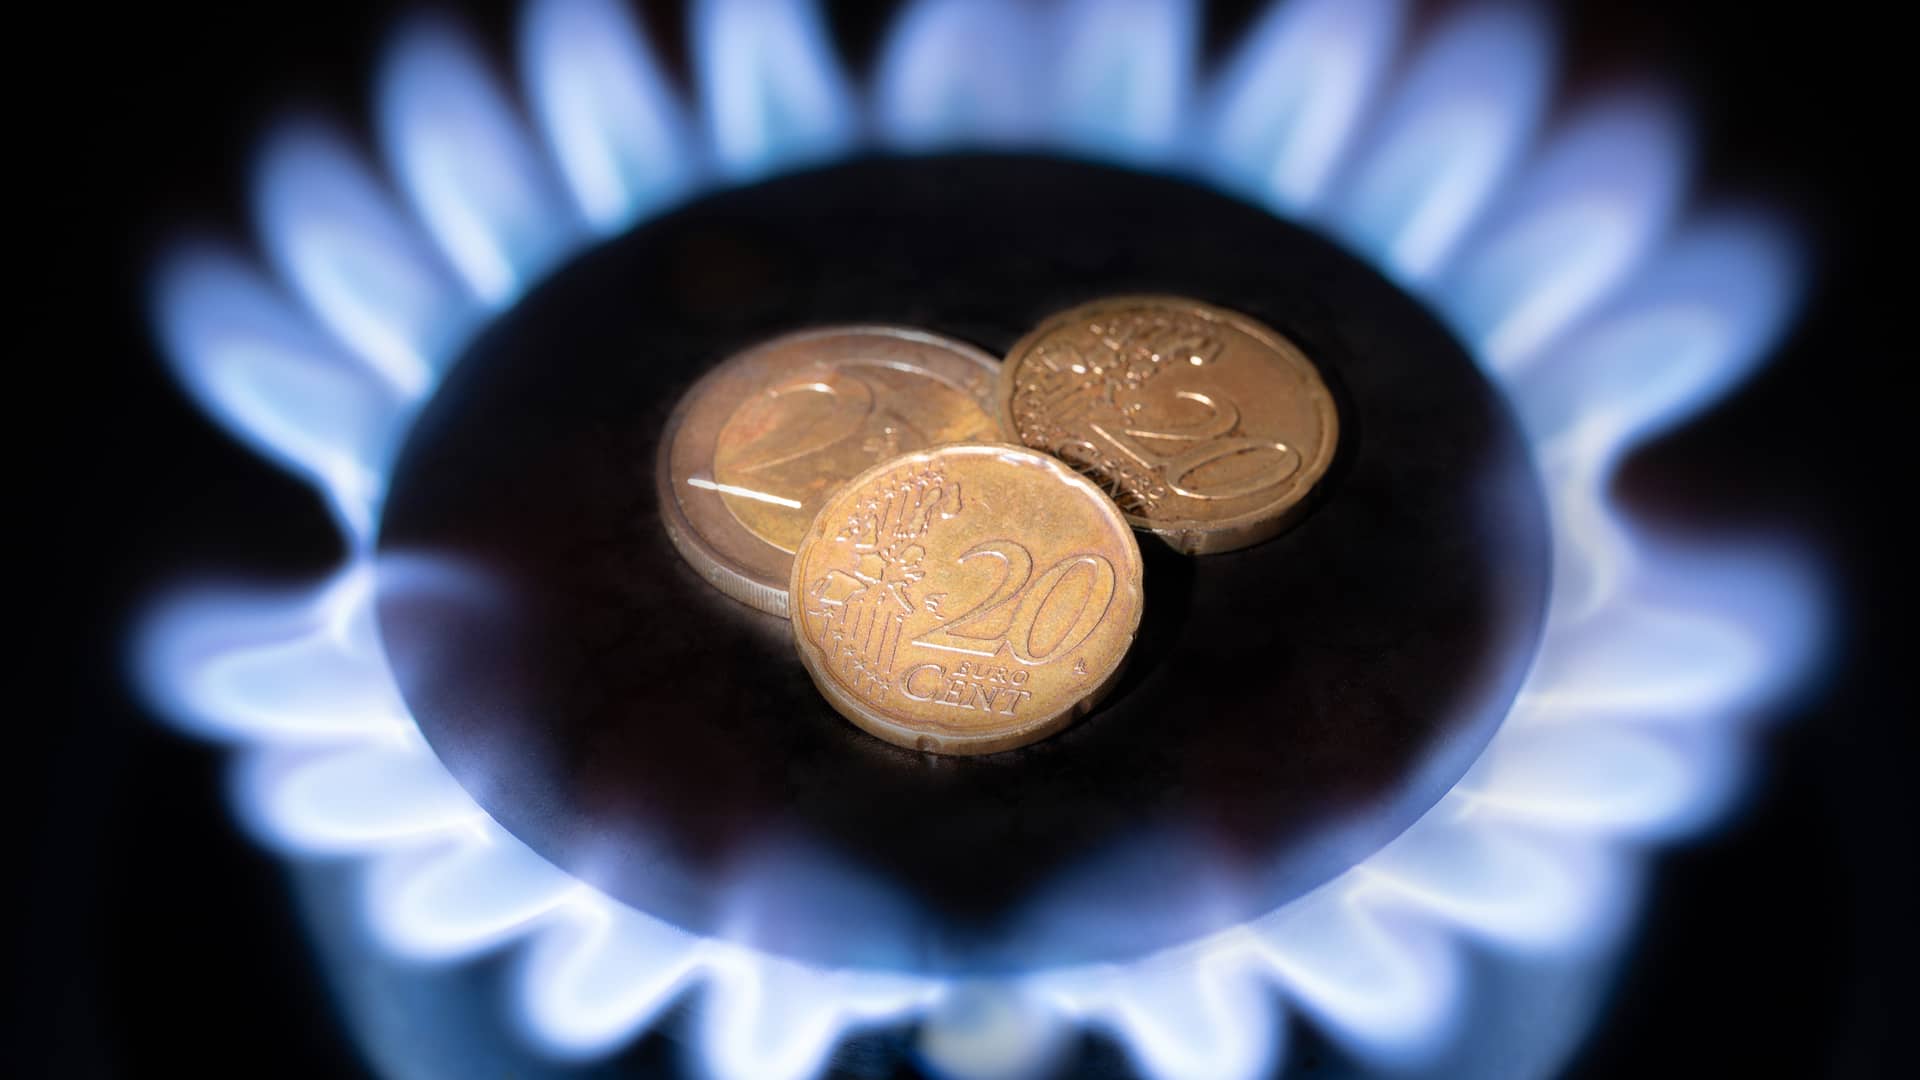 Fuego de cocina de gas con monedas de céntimo de euro en el centro, ilustra las mejores tarifas de gas natural